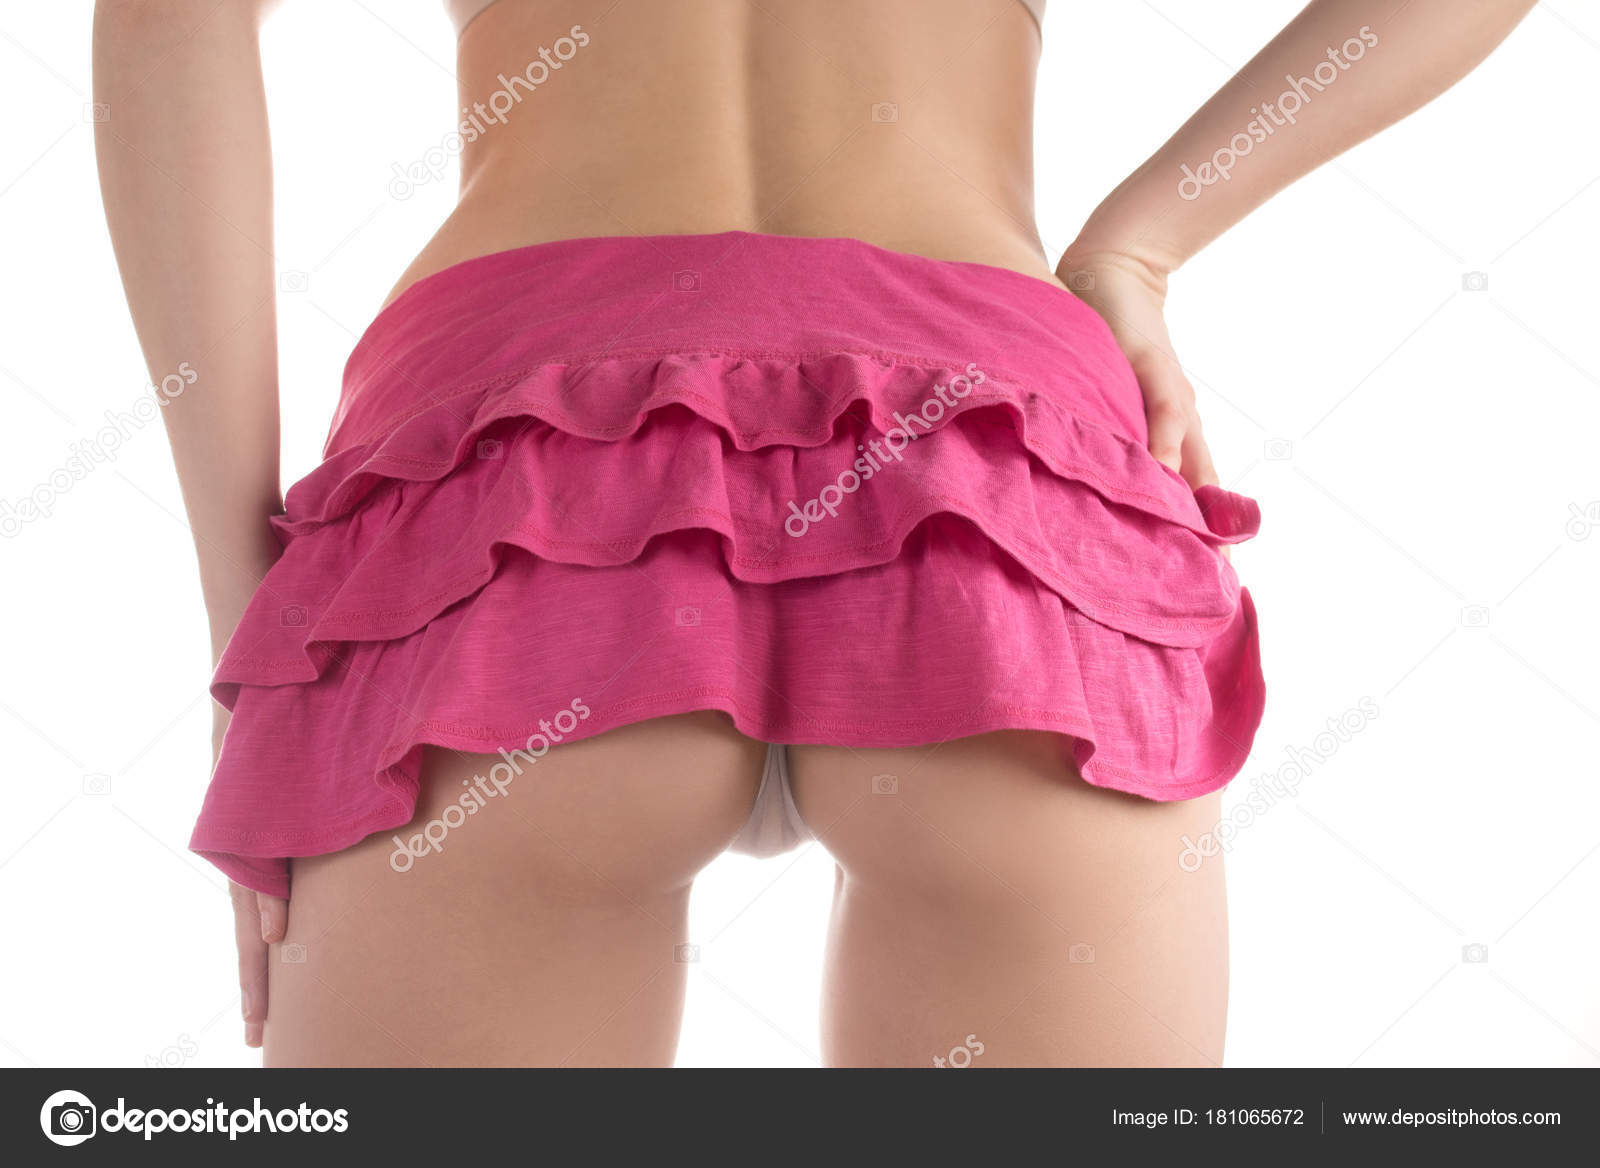 Ass In Skirt Pics